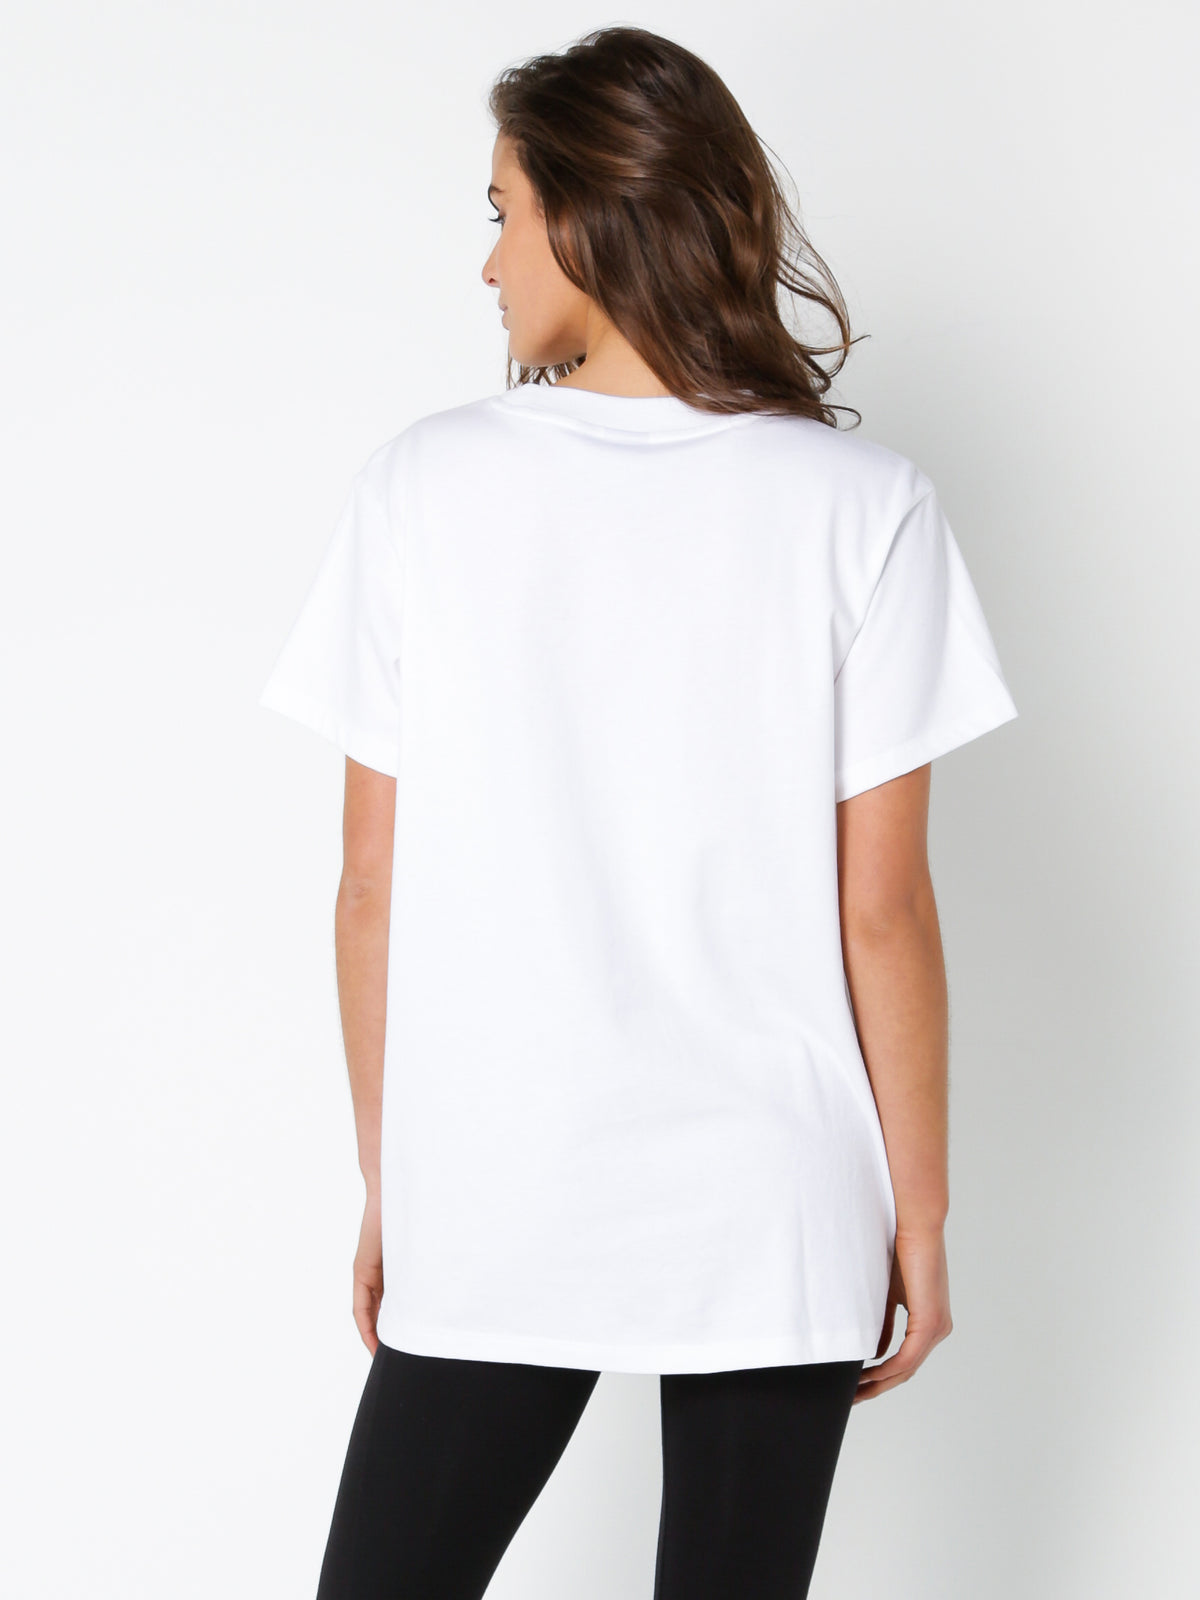 Osaka Big Trefoil T-Shirt in White